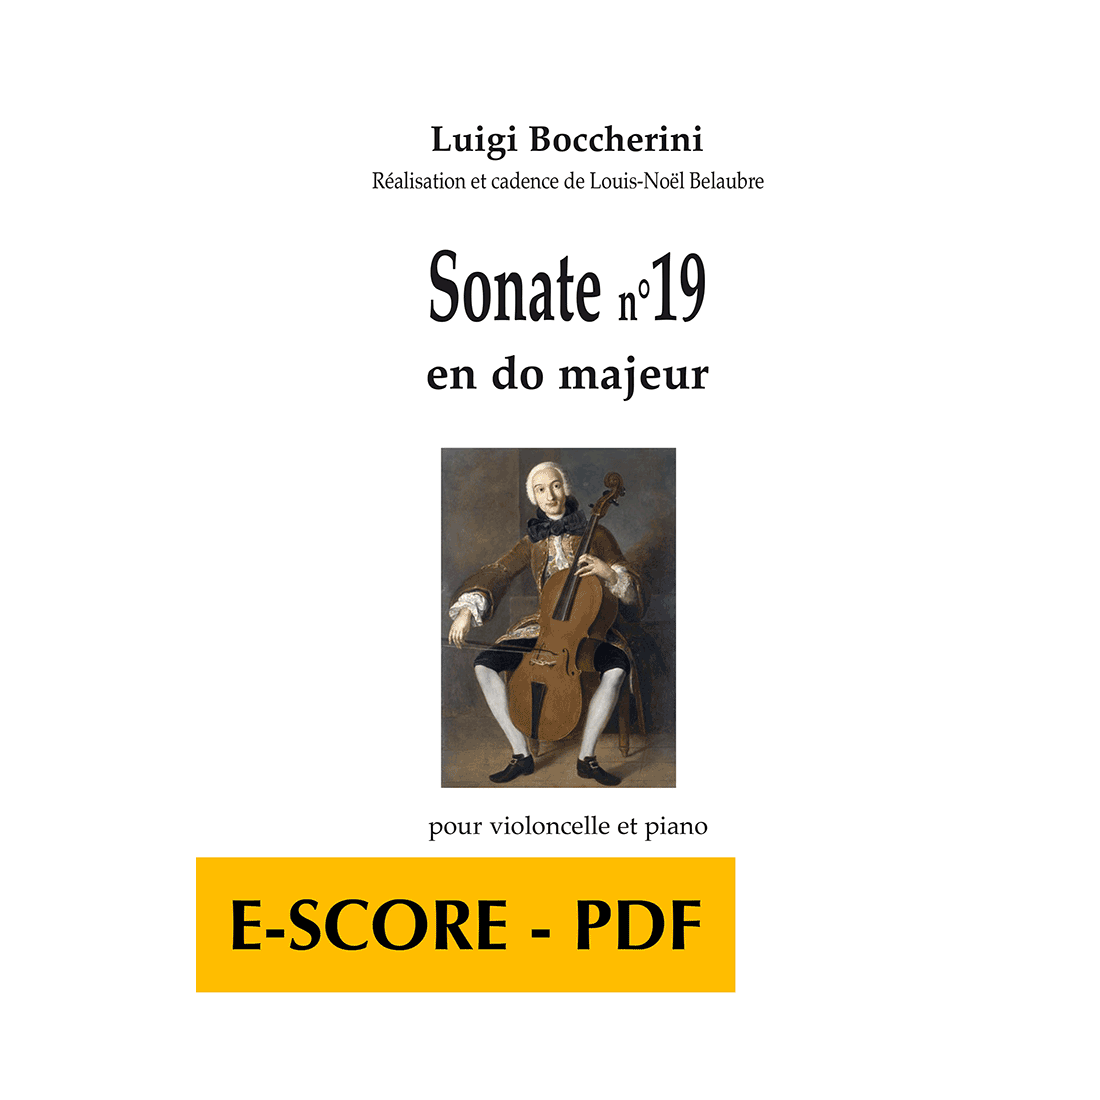 Sonate n°19 en do majeur pour violoncelle et piano - E-score PDF